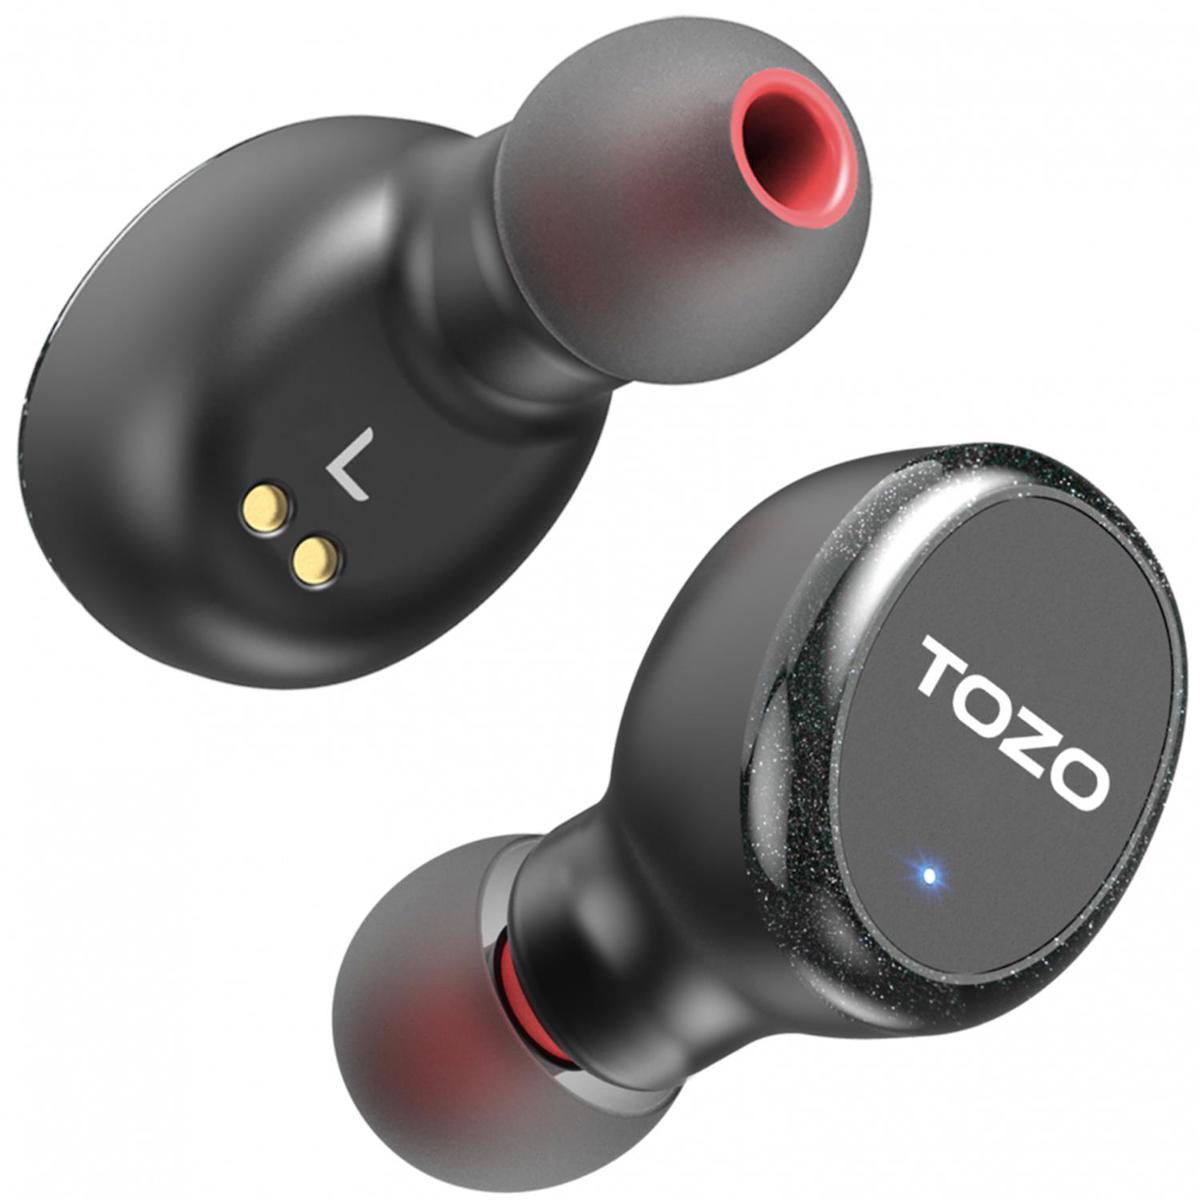 Tozo T10S IPX8 Su Geçirmez 5.3 Gürültü Önleyici Kablosuz Kulak İçi Bluetooth Kulaklık Siyah